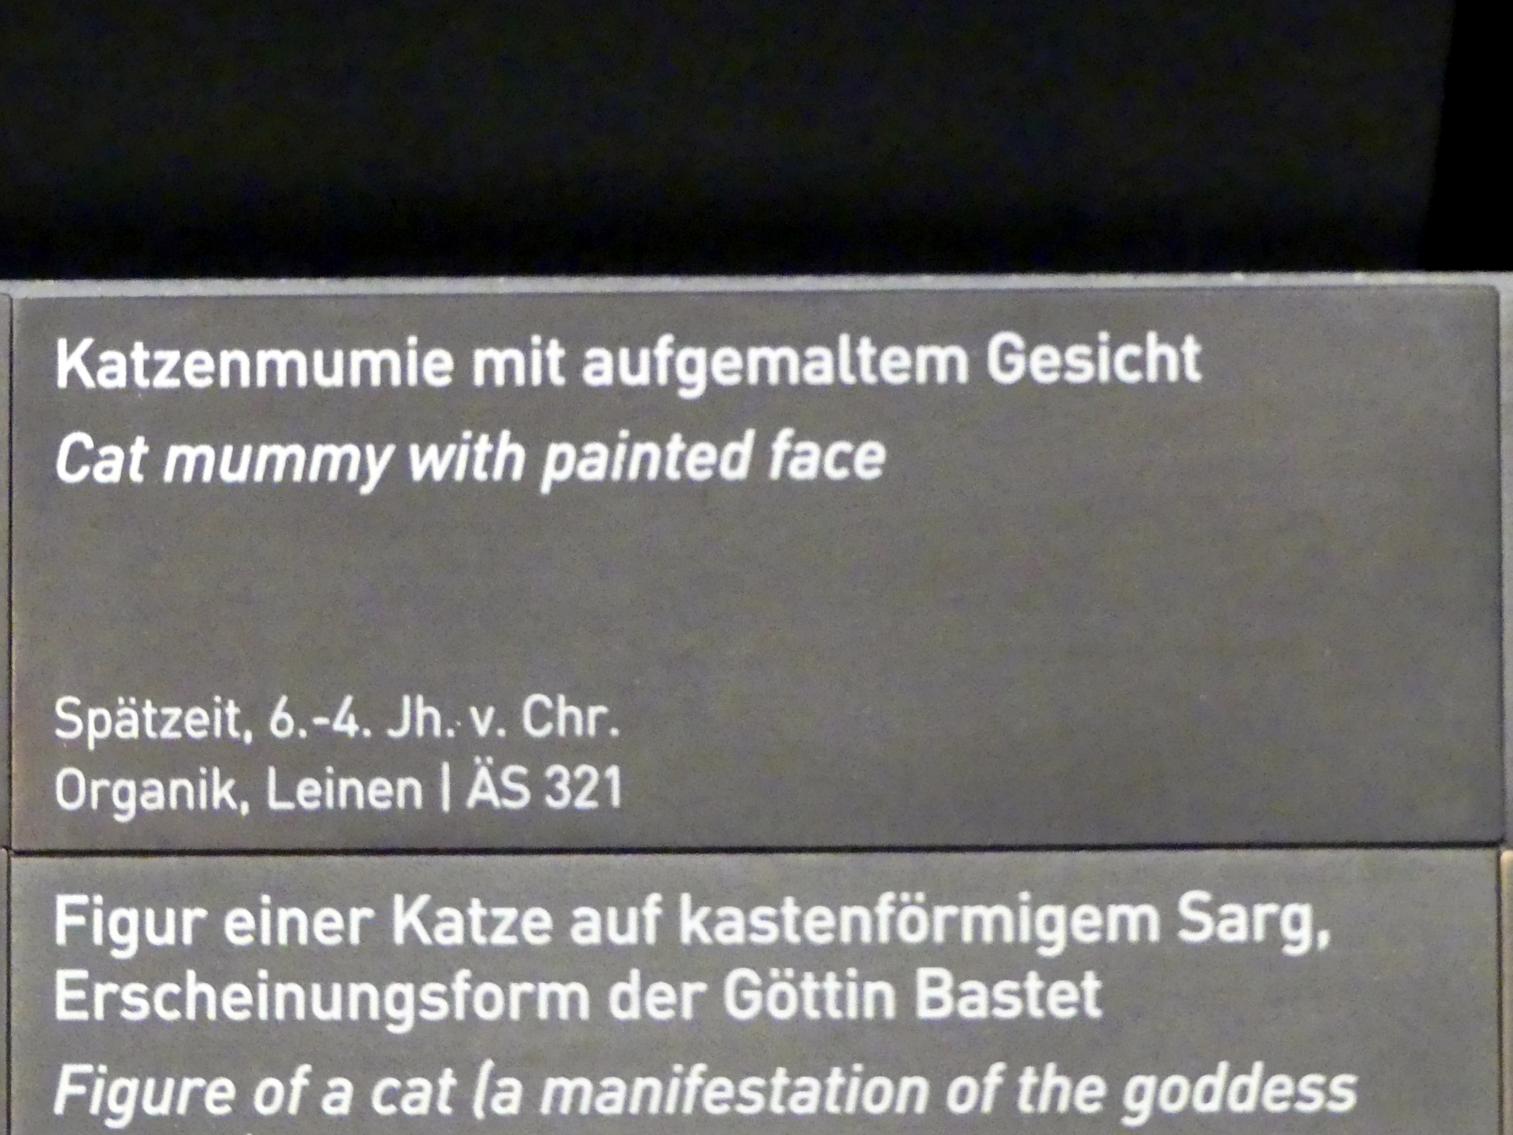 Katzenmumie mit aufgemaltem Gesicht, Spätzeit, 360 - 342 v. Chr., 600 - 300 v. Chr., Bild 3/3